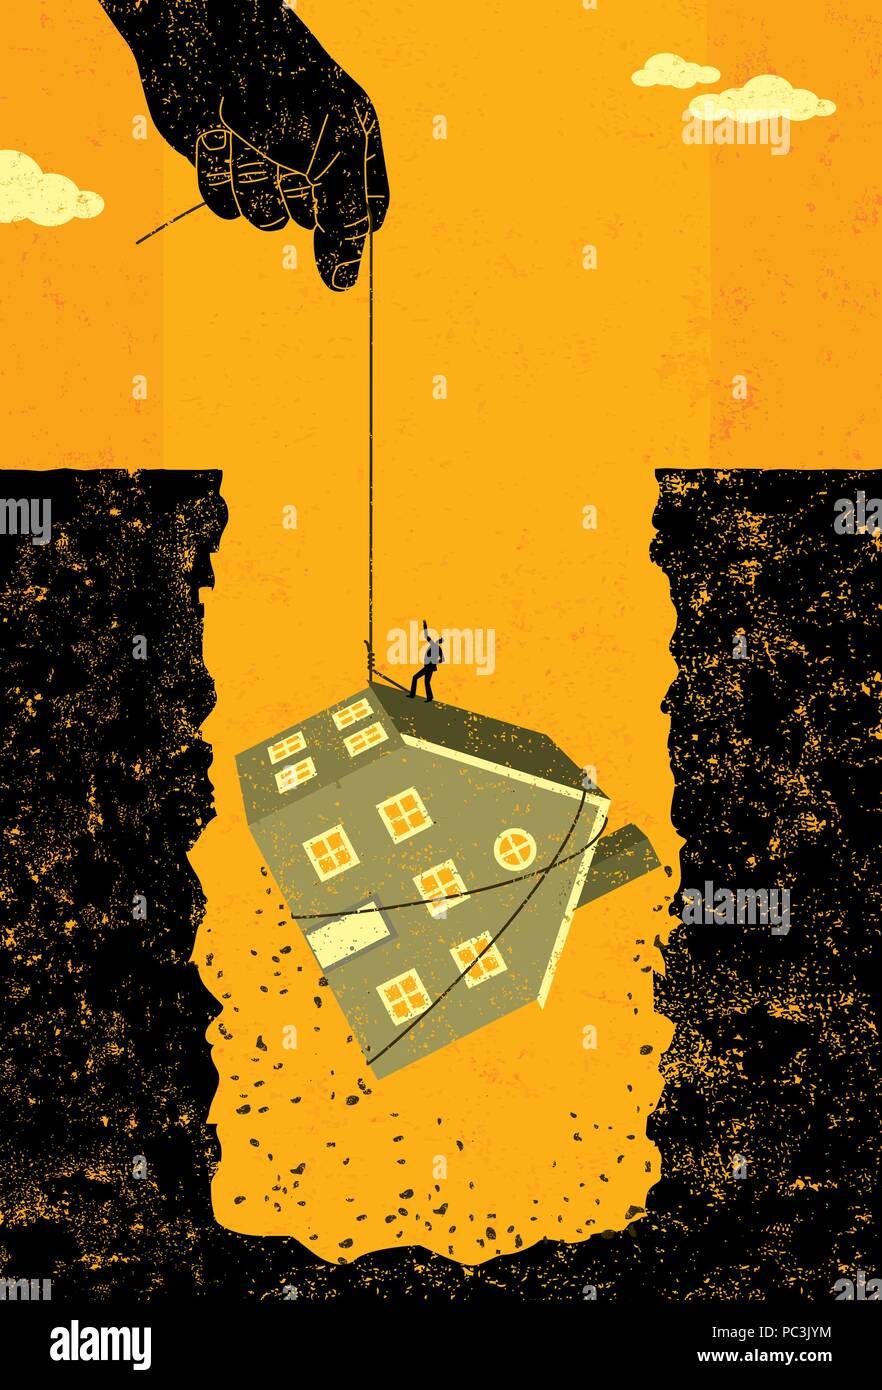 Home debito ipotecario bailout una grande mano offrendo assistenza finanziaria mediante il sollevamento di un uomo e la sua casa al di fuori del grande buco del debito creato da housi Illustrazione Vettoriale